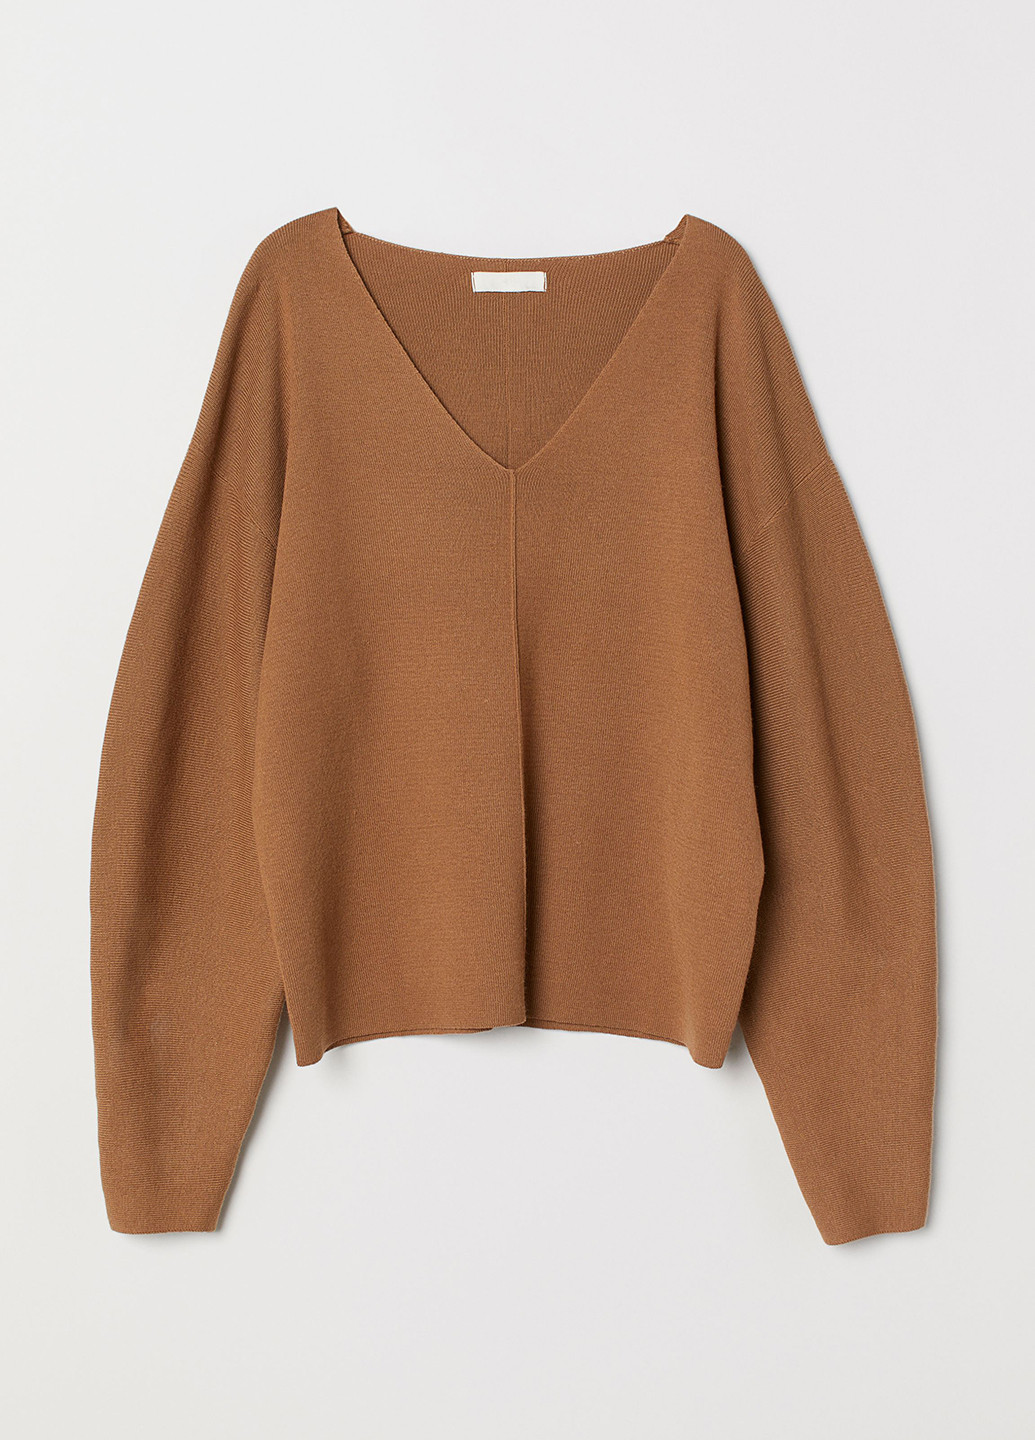 Светло-коричневый демисезонный пуловер пуловер H&M